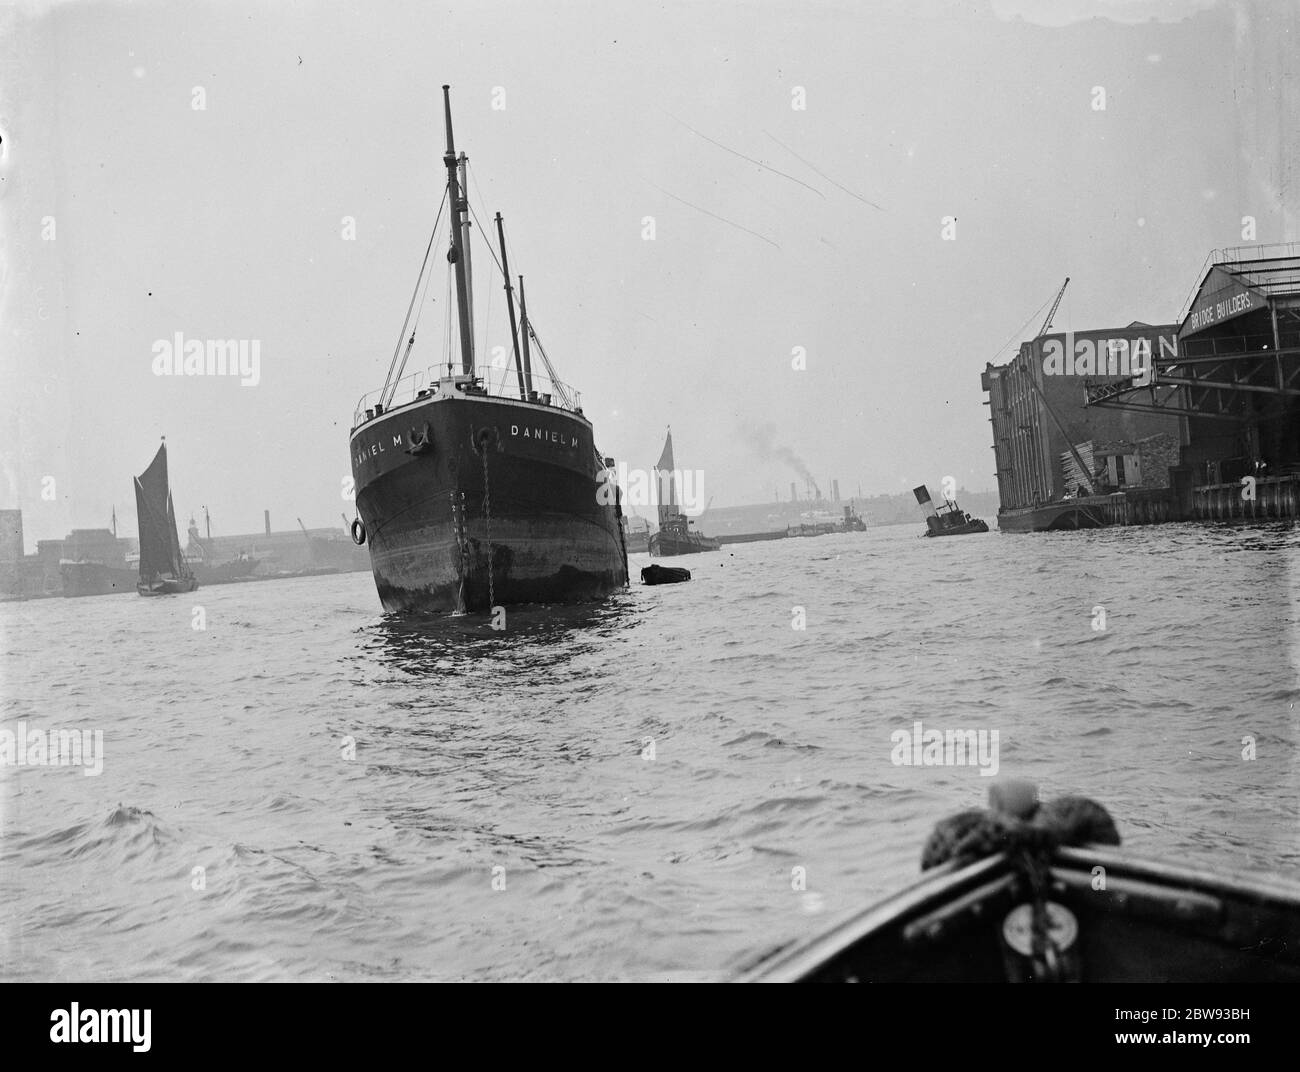 La prow de ' Daniel ' , un navire marchand , suite à une collision avec le remorqueur ' , gusty ' , sur la Tamise à Greenwich , Londres . Le remorqueur partiellement coulé peut être vu à droite de l'image . 1939 Banque D'Images